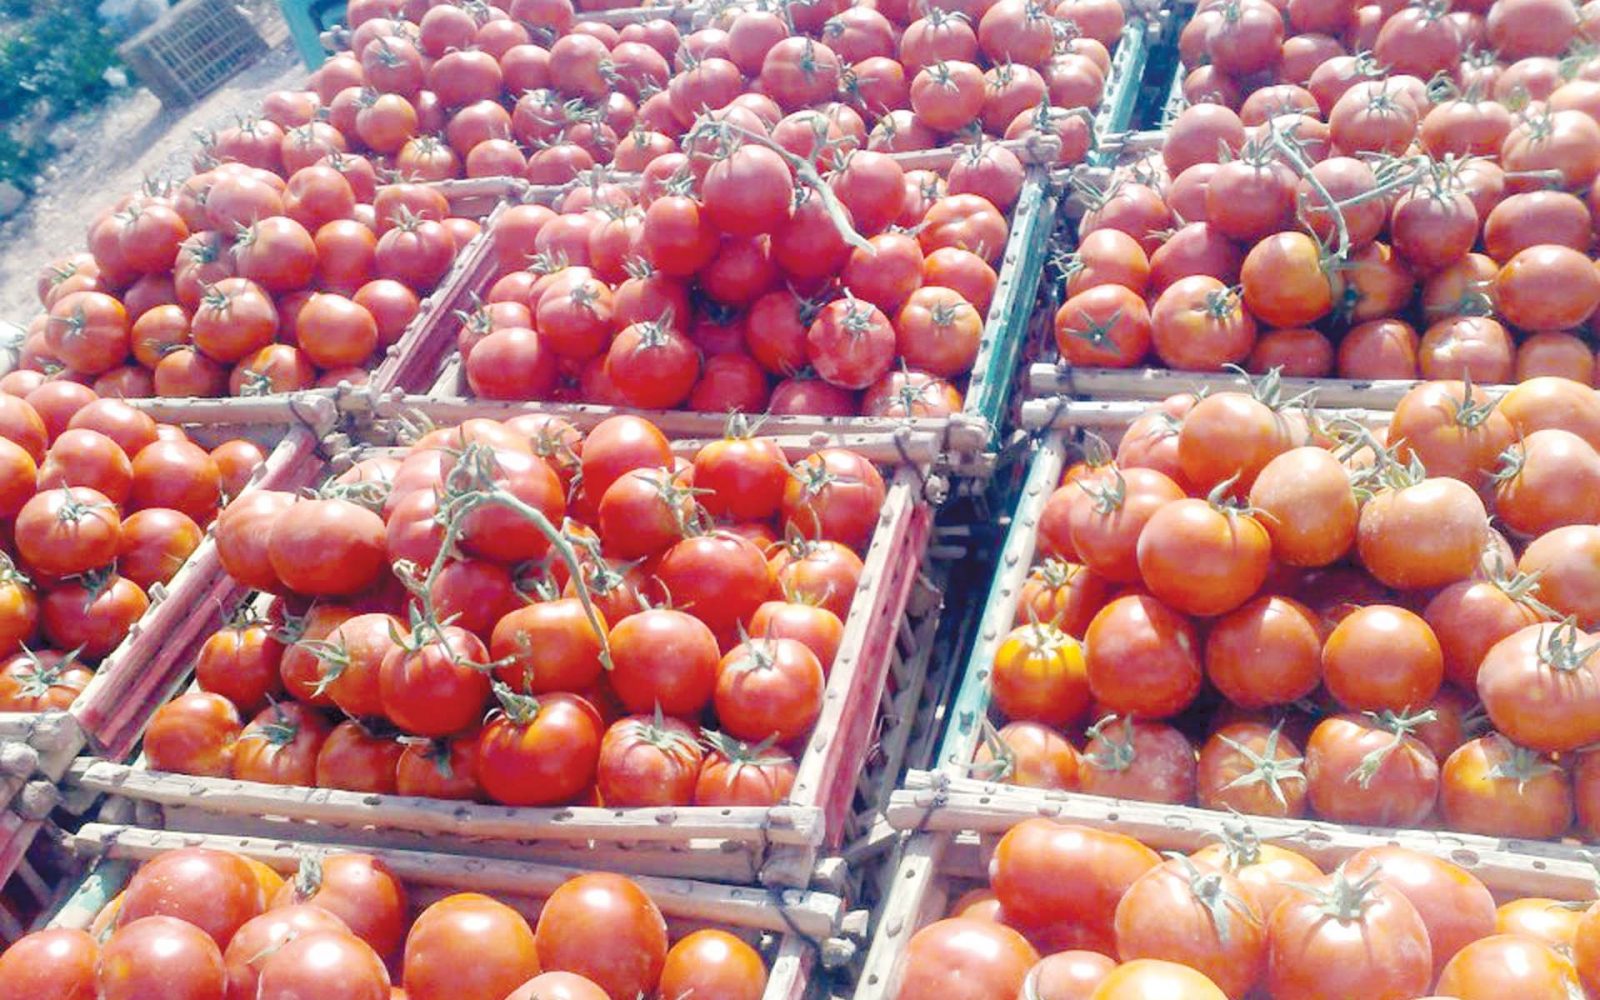 الناطق الرسمي باسم الحكومة: أثمنة الطماطم بسوق الجملة تراوحت ما بين 2 إلى 4 دراهم وسوق الجملة يحتاج إلى تنظيم